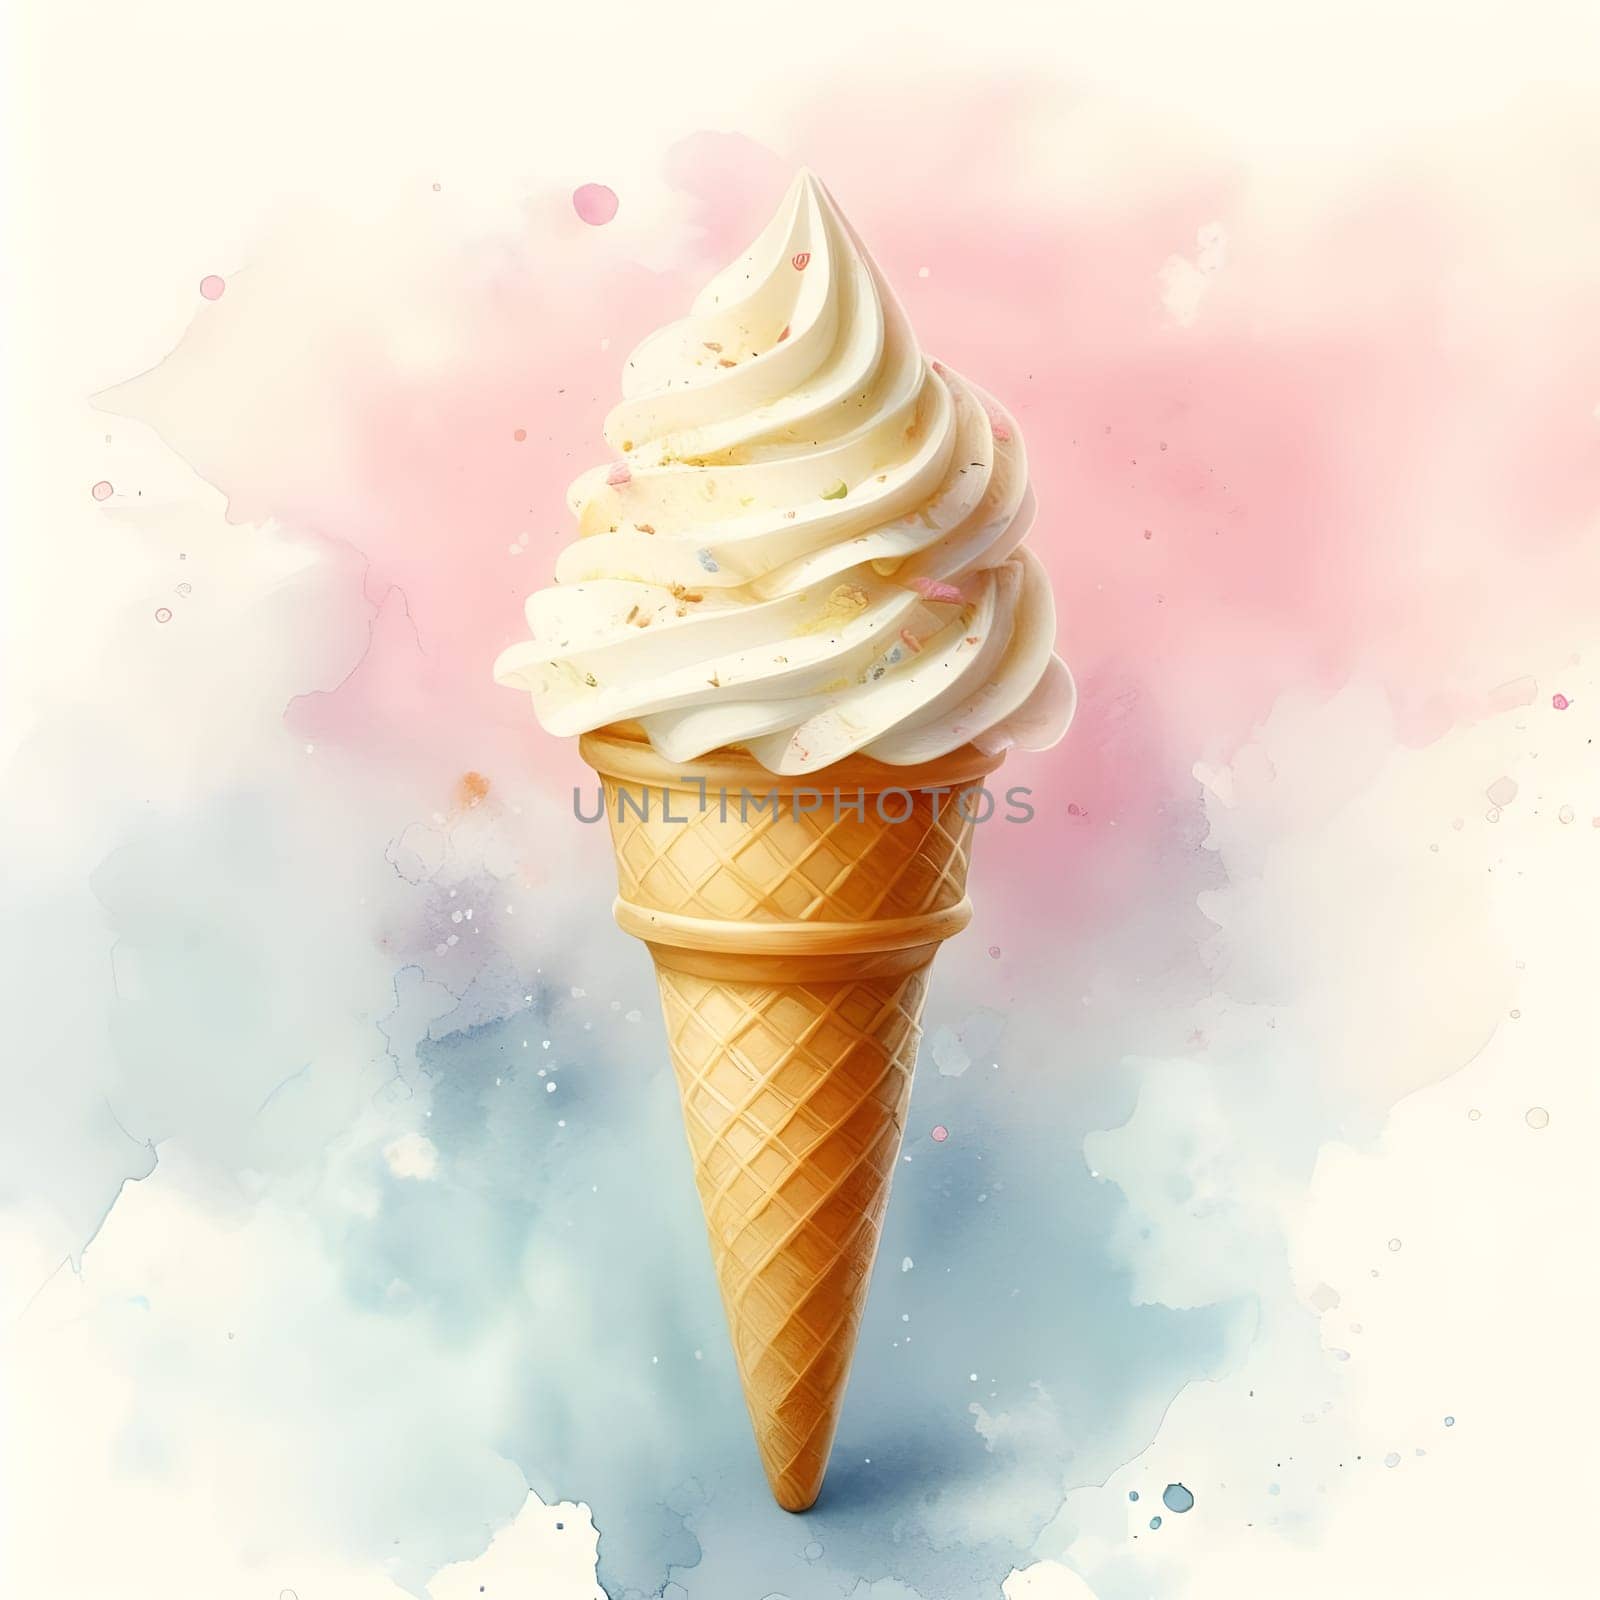 Vanilla cream ice-cream cone in watercolor background.